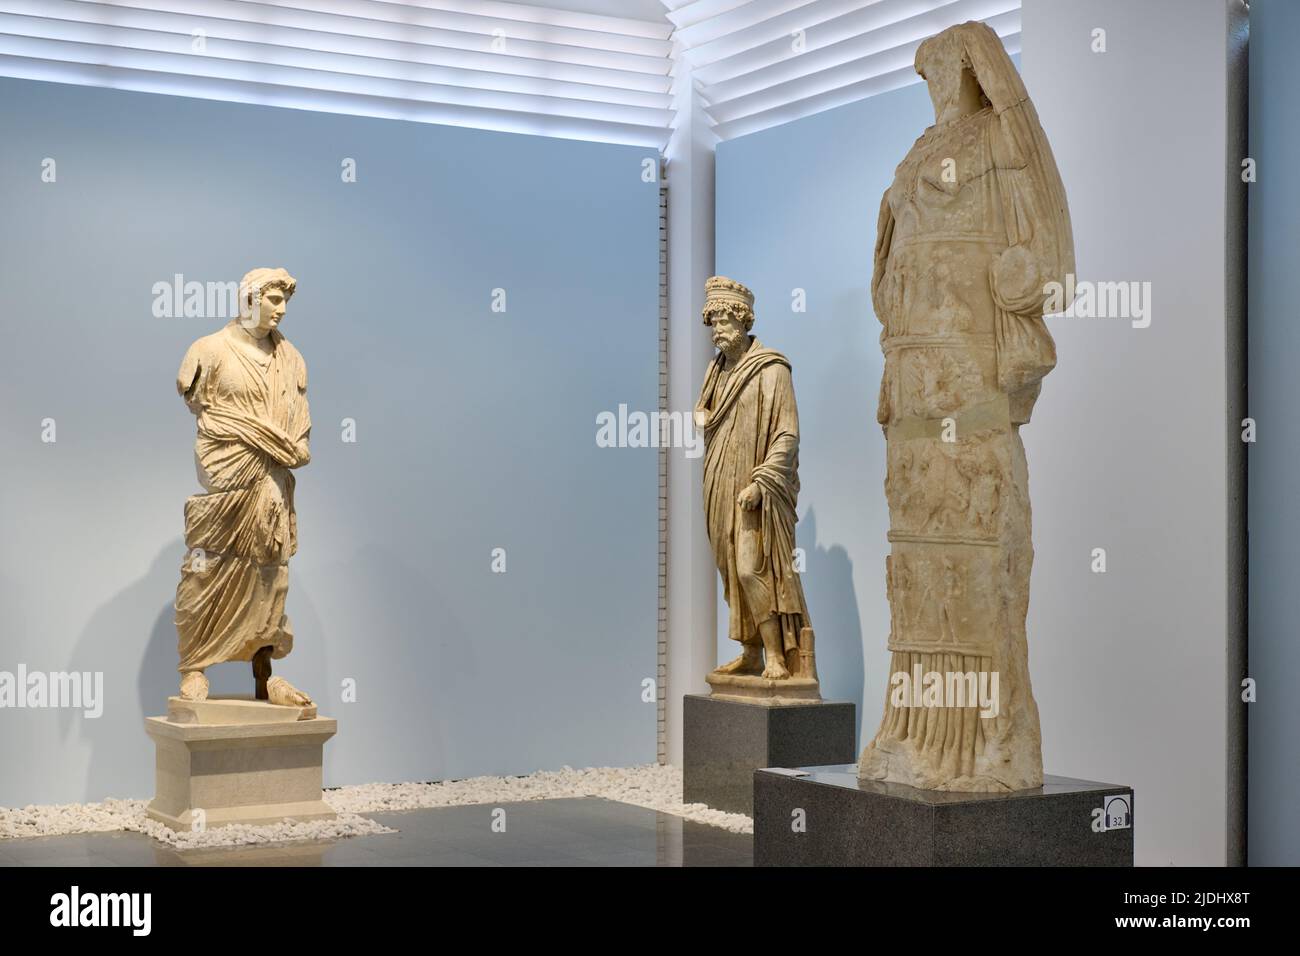 Marmorskulpturen und Statuen im Museum von Aphrodisias Antica Città, Denizli, Tuerkei |sculture in marmo e statue all'interno del museo di Aphrodisias A. Foto Stock